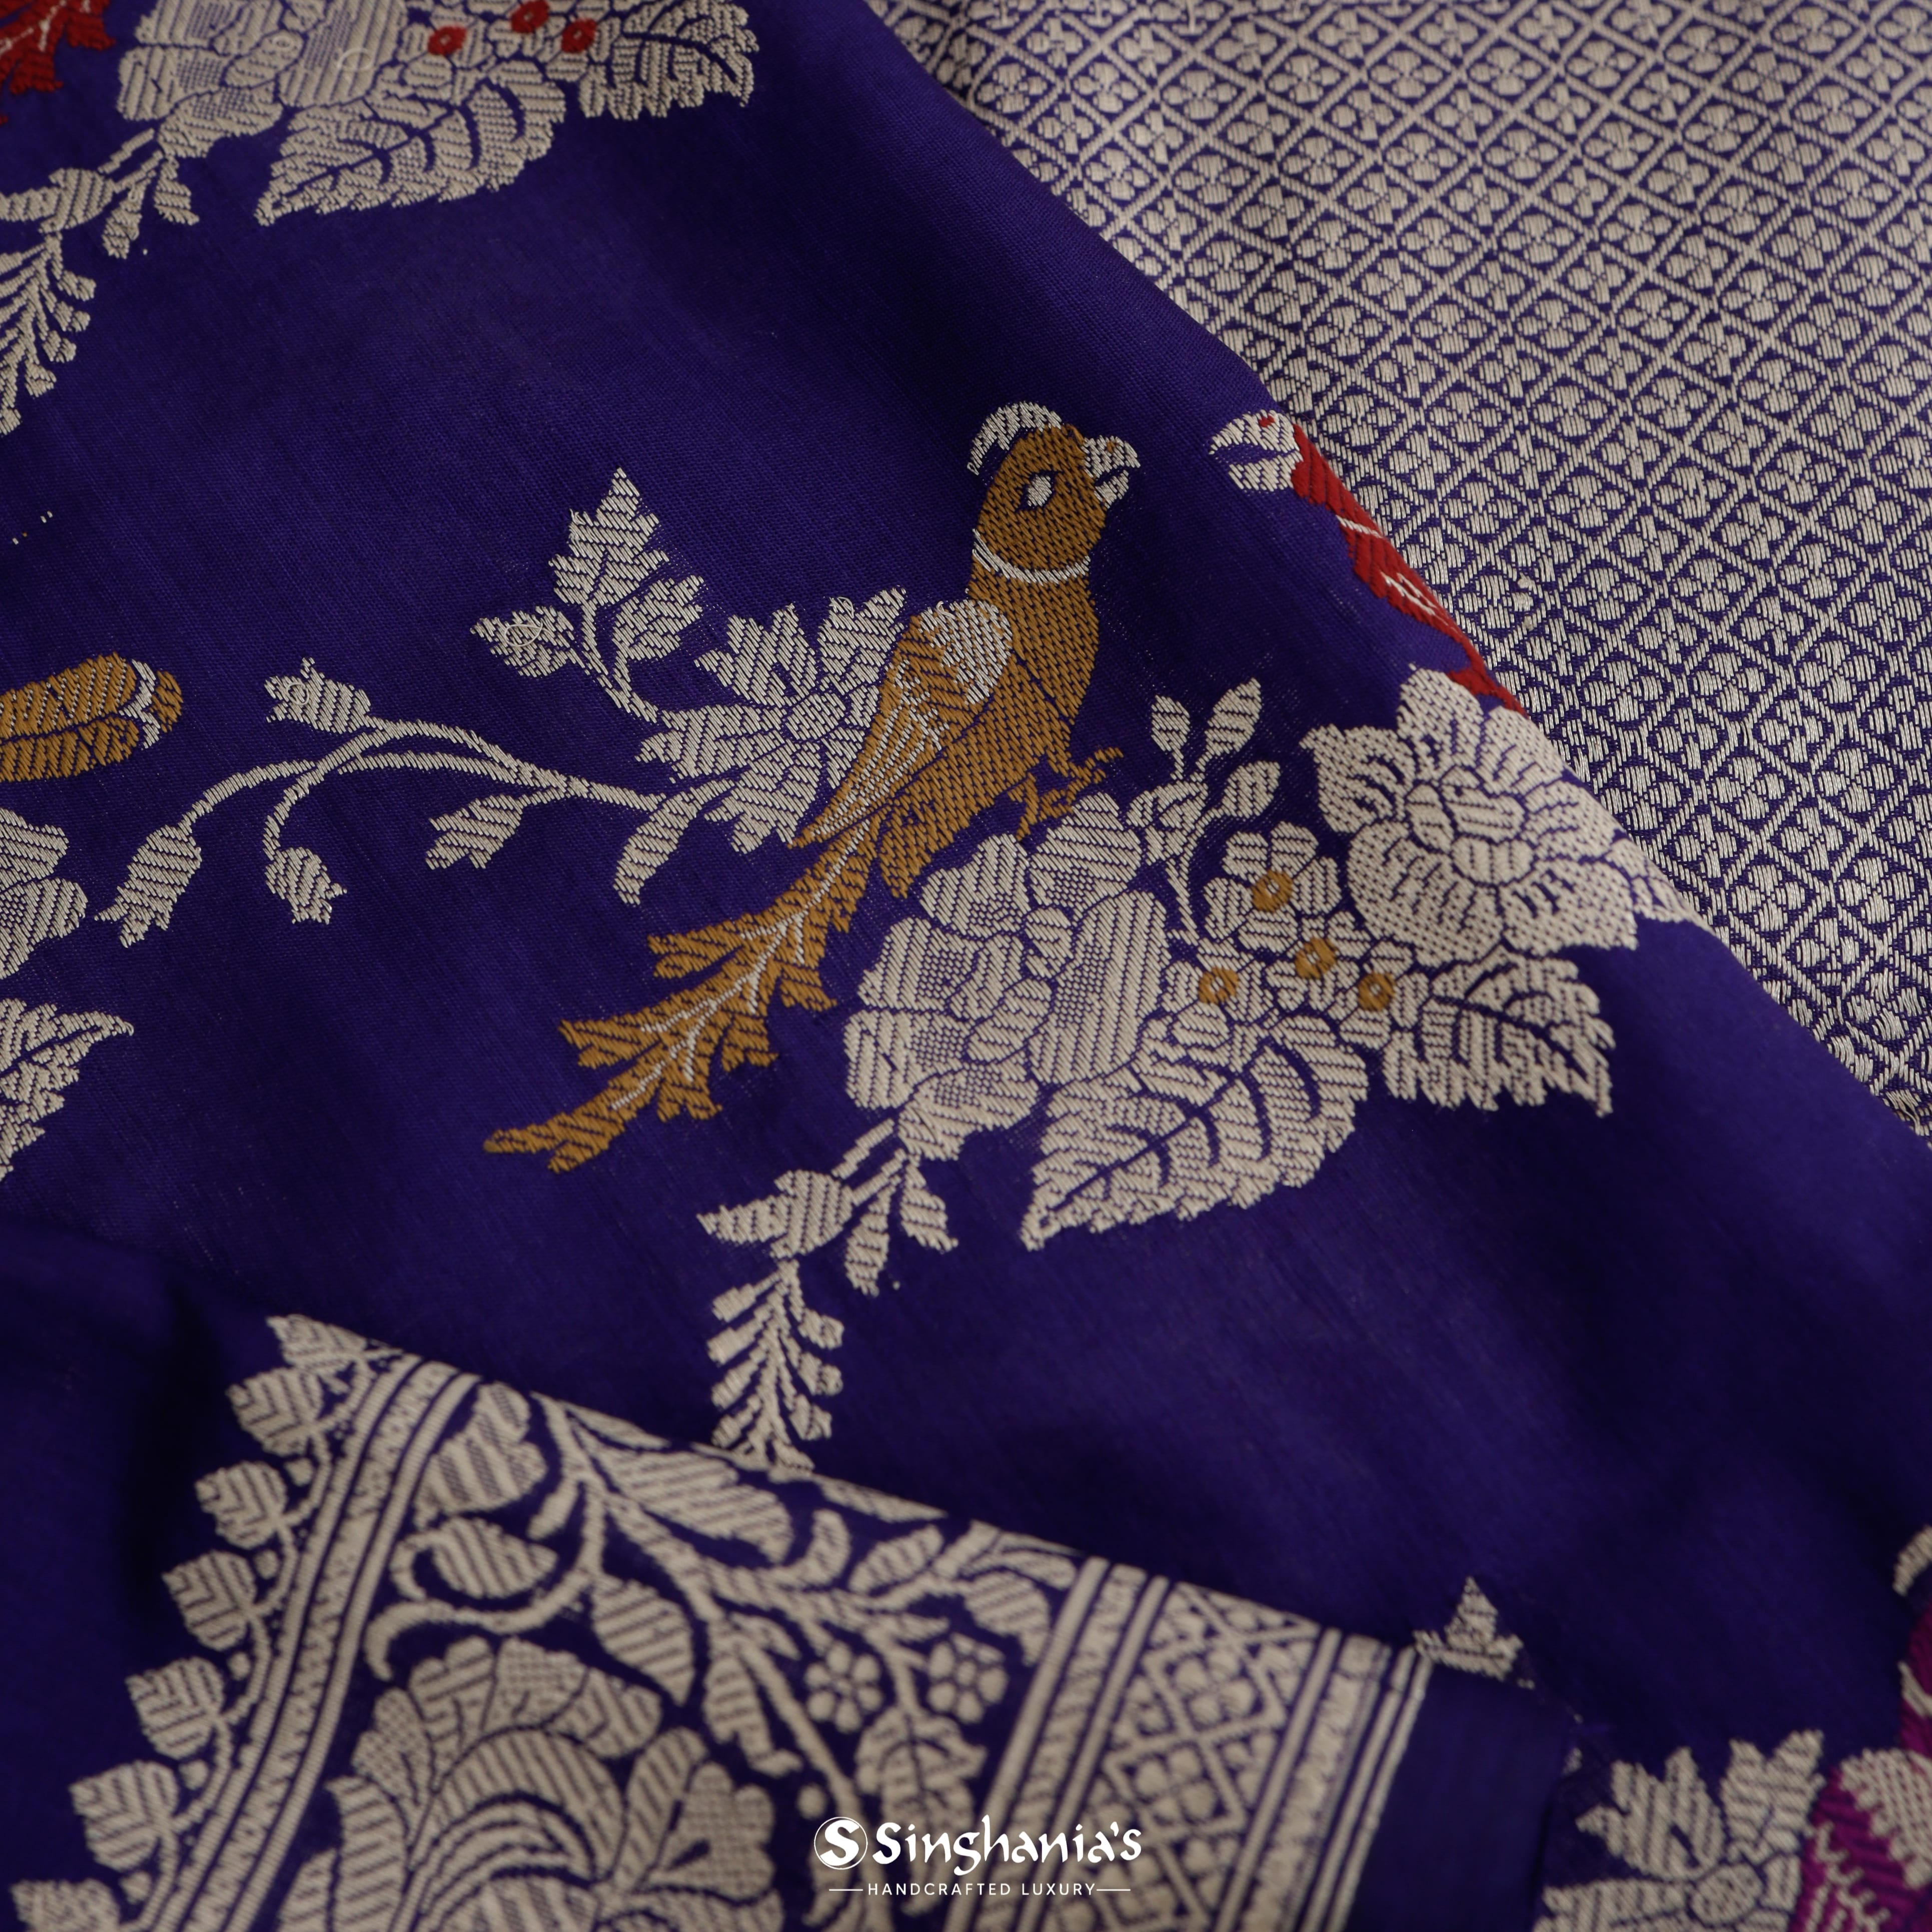 Deep Indigo Silk Banarasi Saree With Nature Inspired Bird Motif Pattern